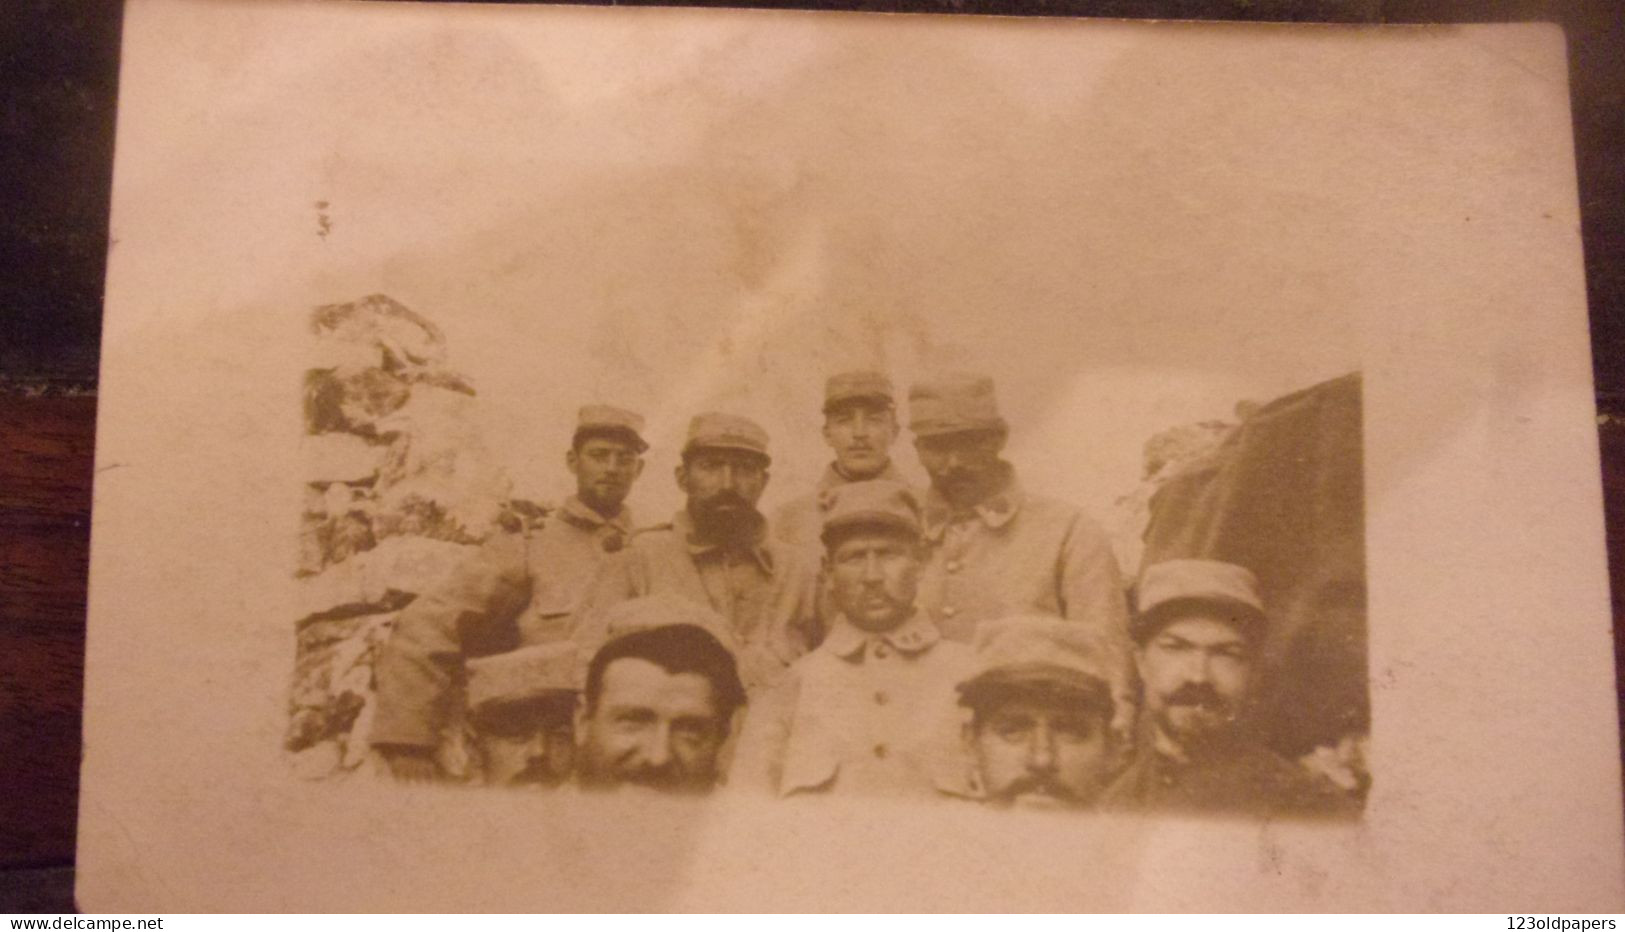 WWI GUERRE 1914   CARTE PHOTO SOLDAT  UNIFORME POILU - Weltkrieg 1914-18